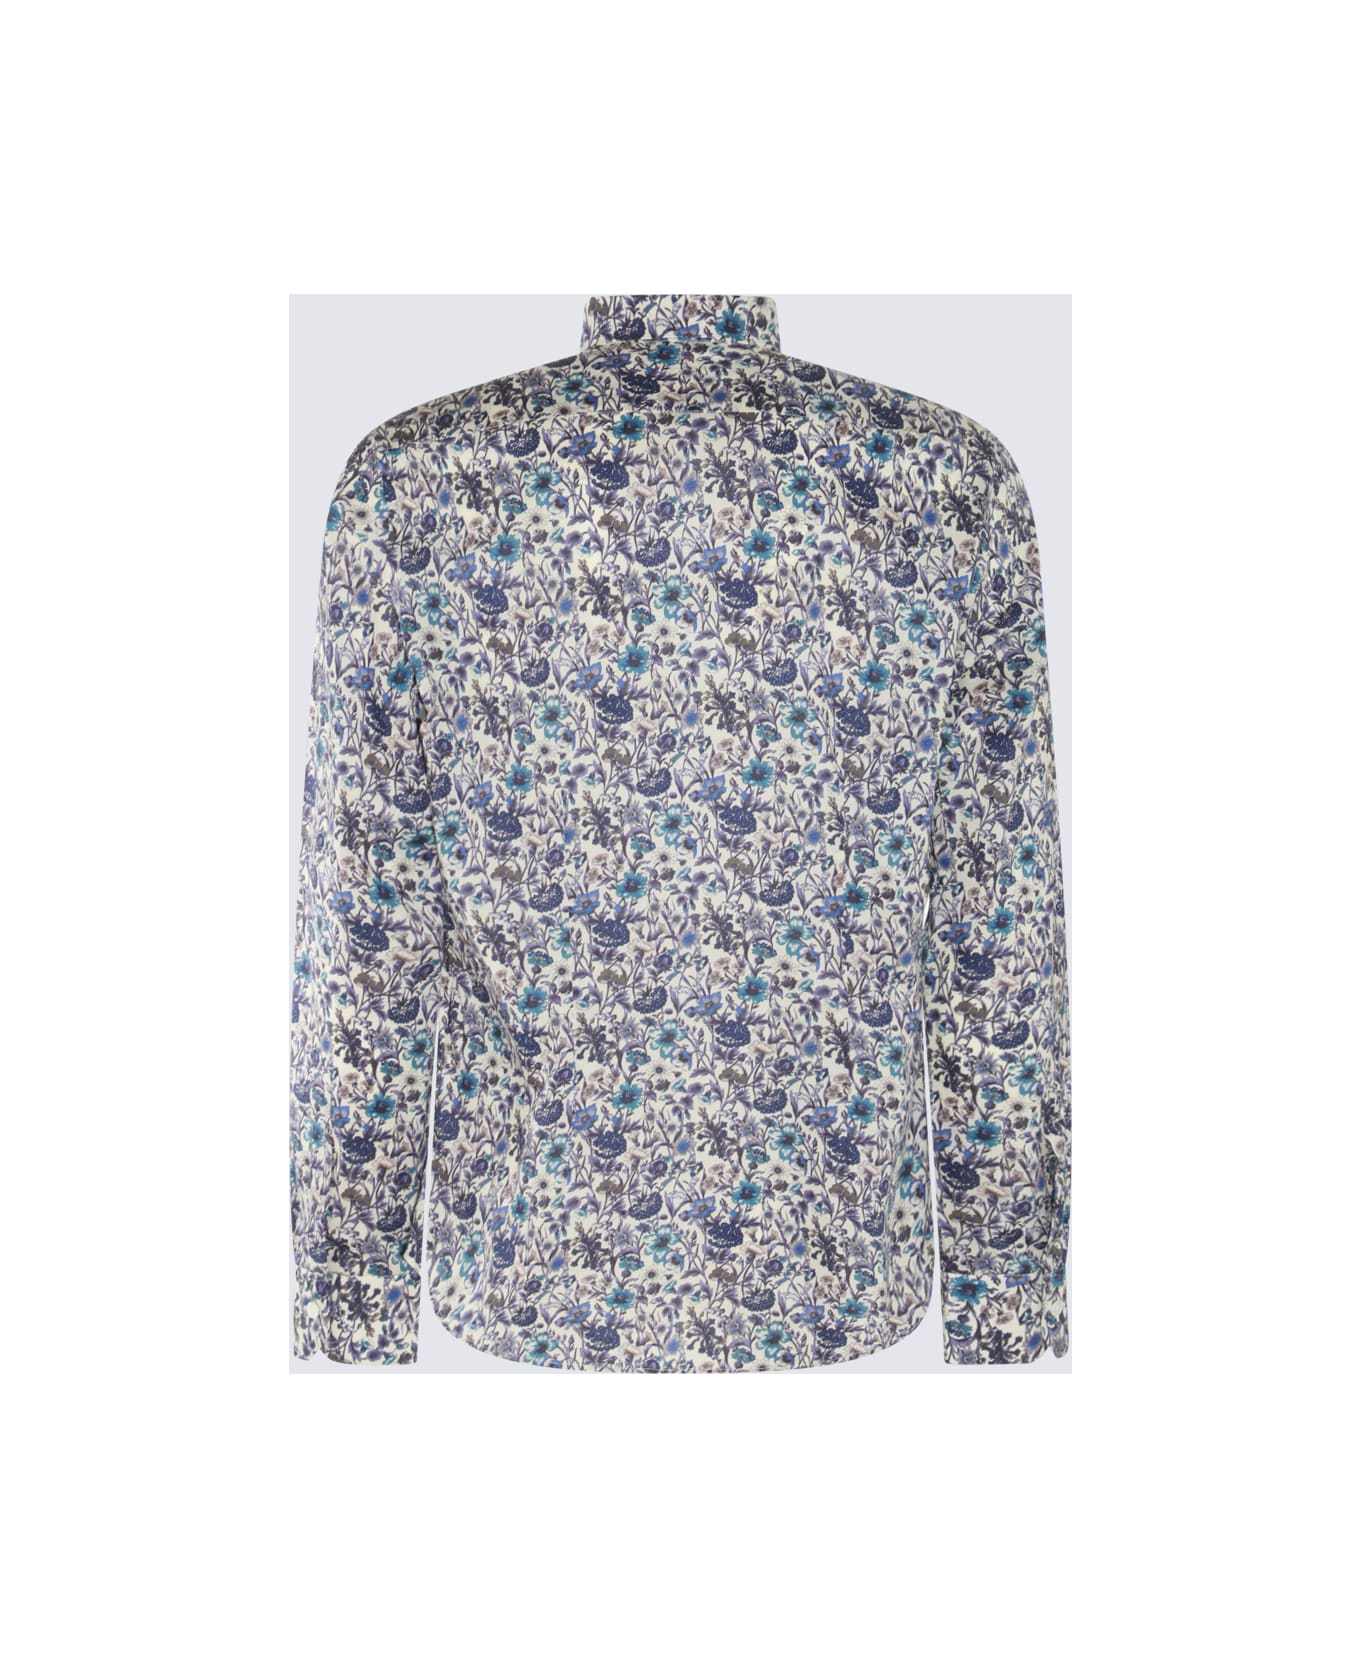 Paul Smith White Multicolour Cotton Shirt - LIGHT BLUE